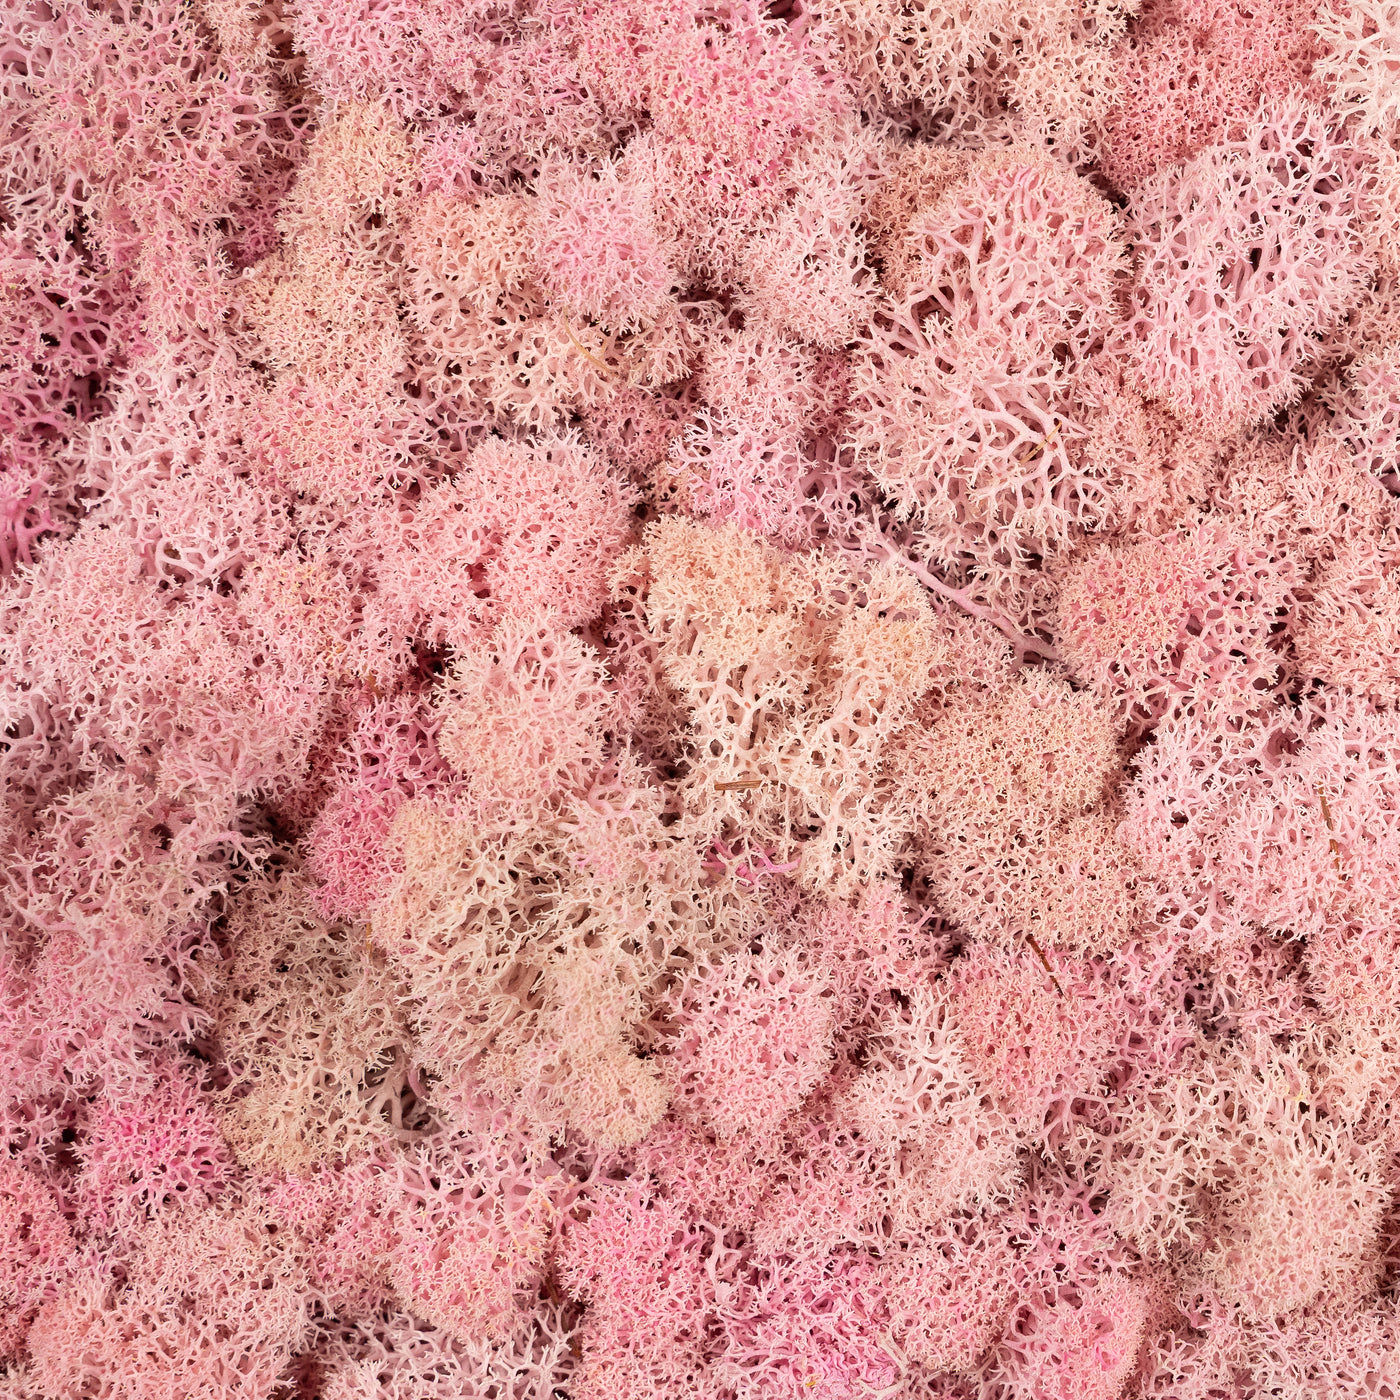 Licheni curatati si fara radacina conservati 500g NET, calitate PREMIUM, roz pal RR31